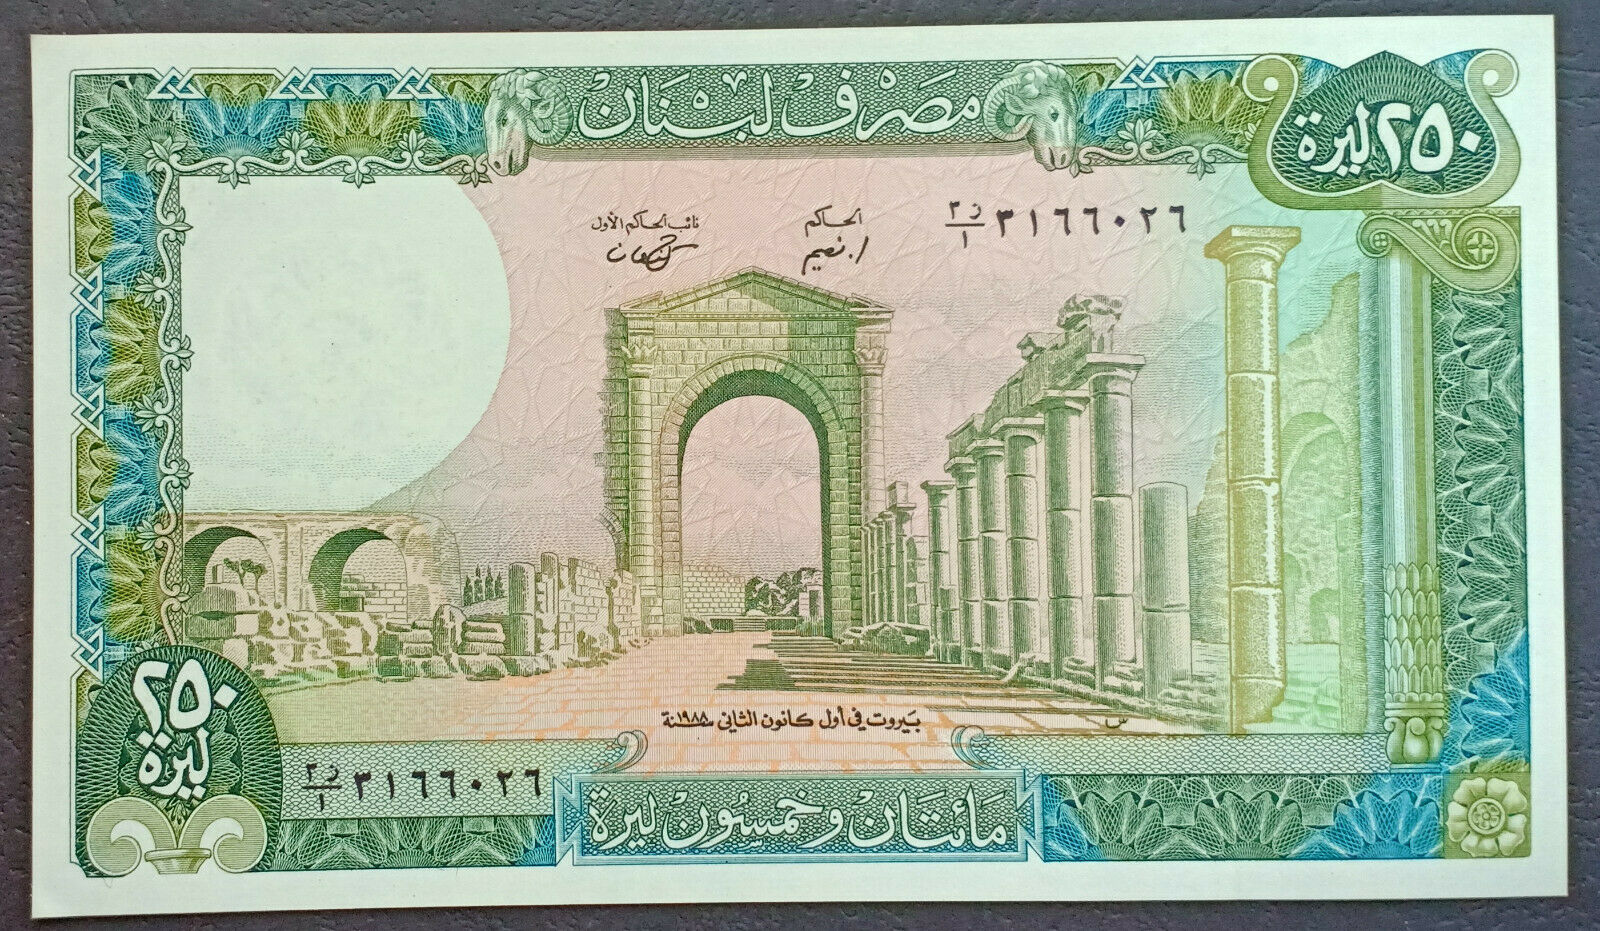 Lebanon - Liban - Libano 250 Liras Lbp Lebanese Pound 1988 Unc